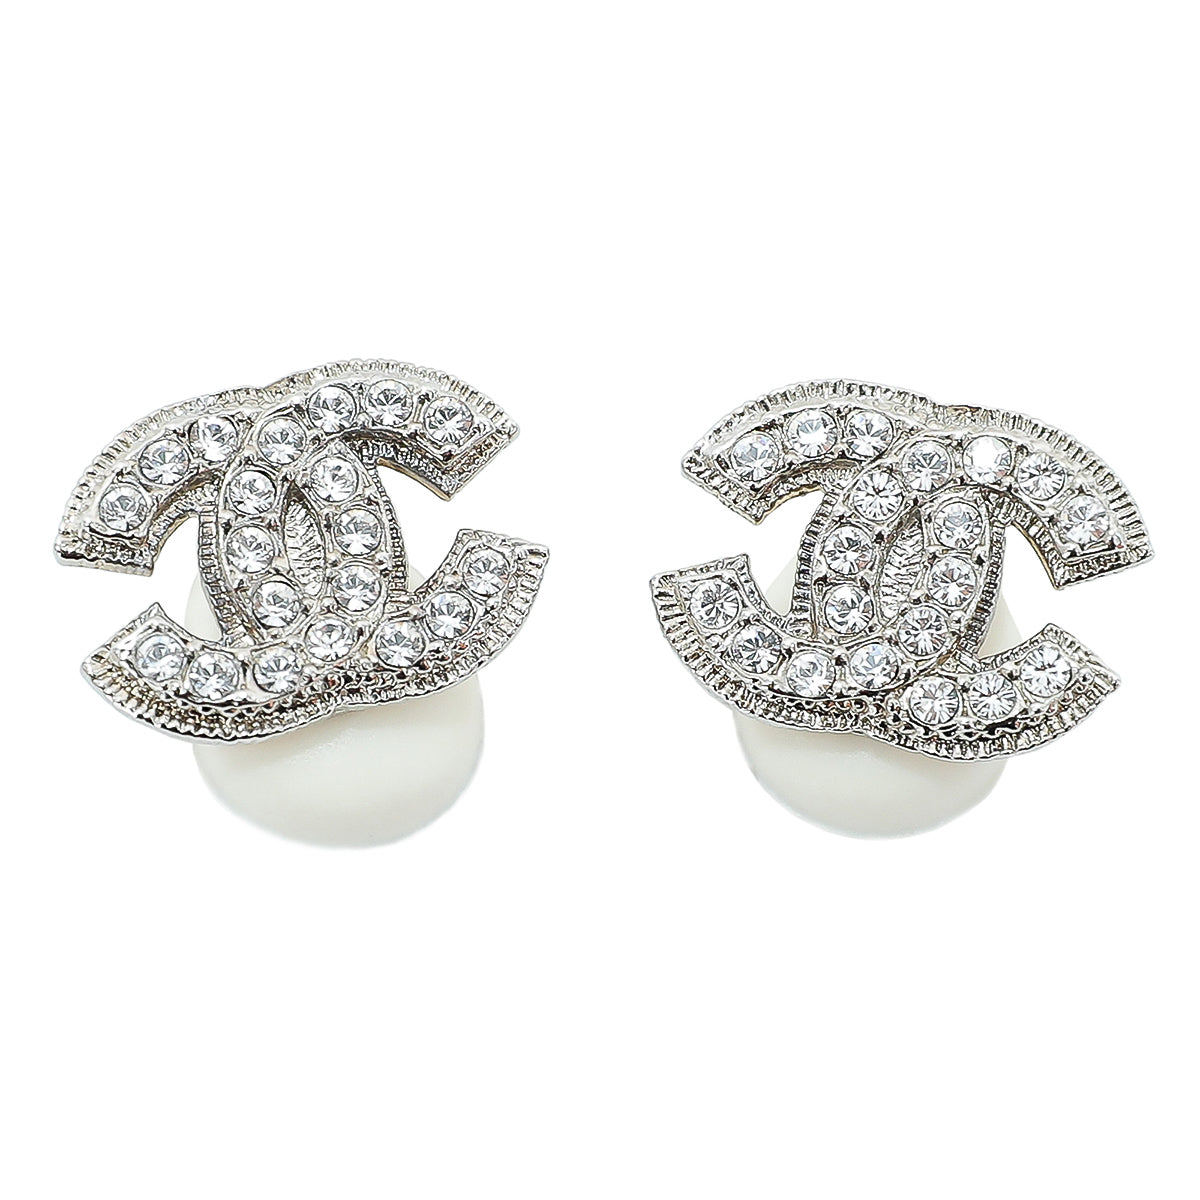 Cc earrings Chanel Silver in Metal - 32759081